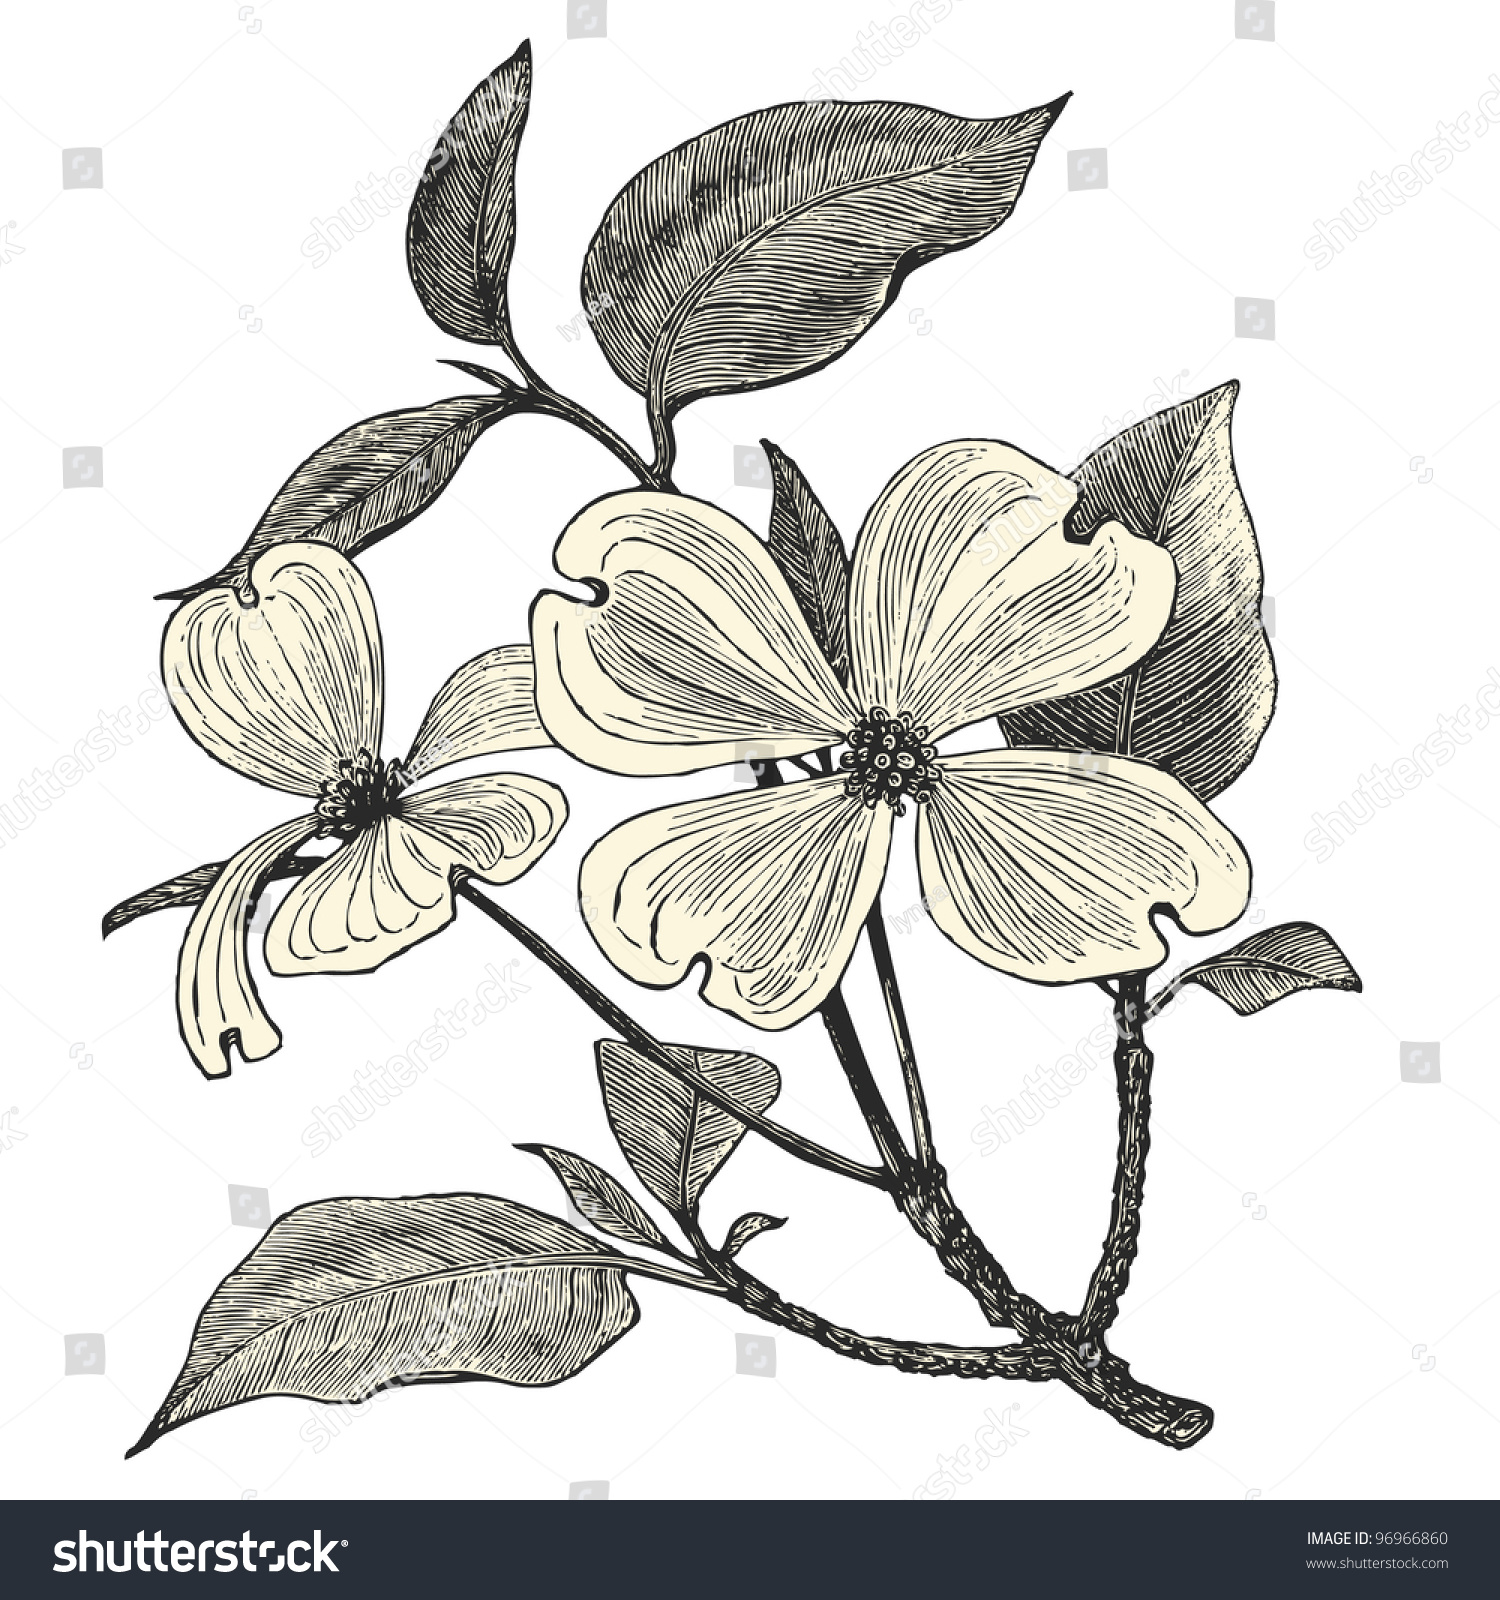 SVG of Flowering Dogwood - vintage engraved illustration - 